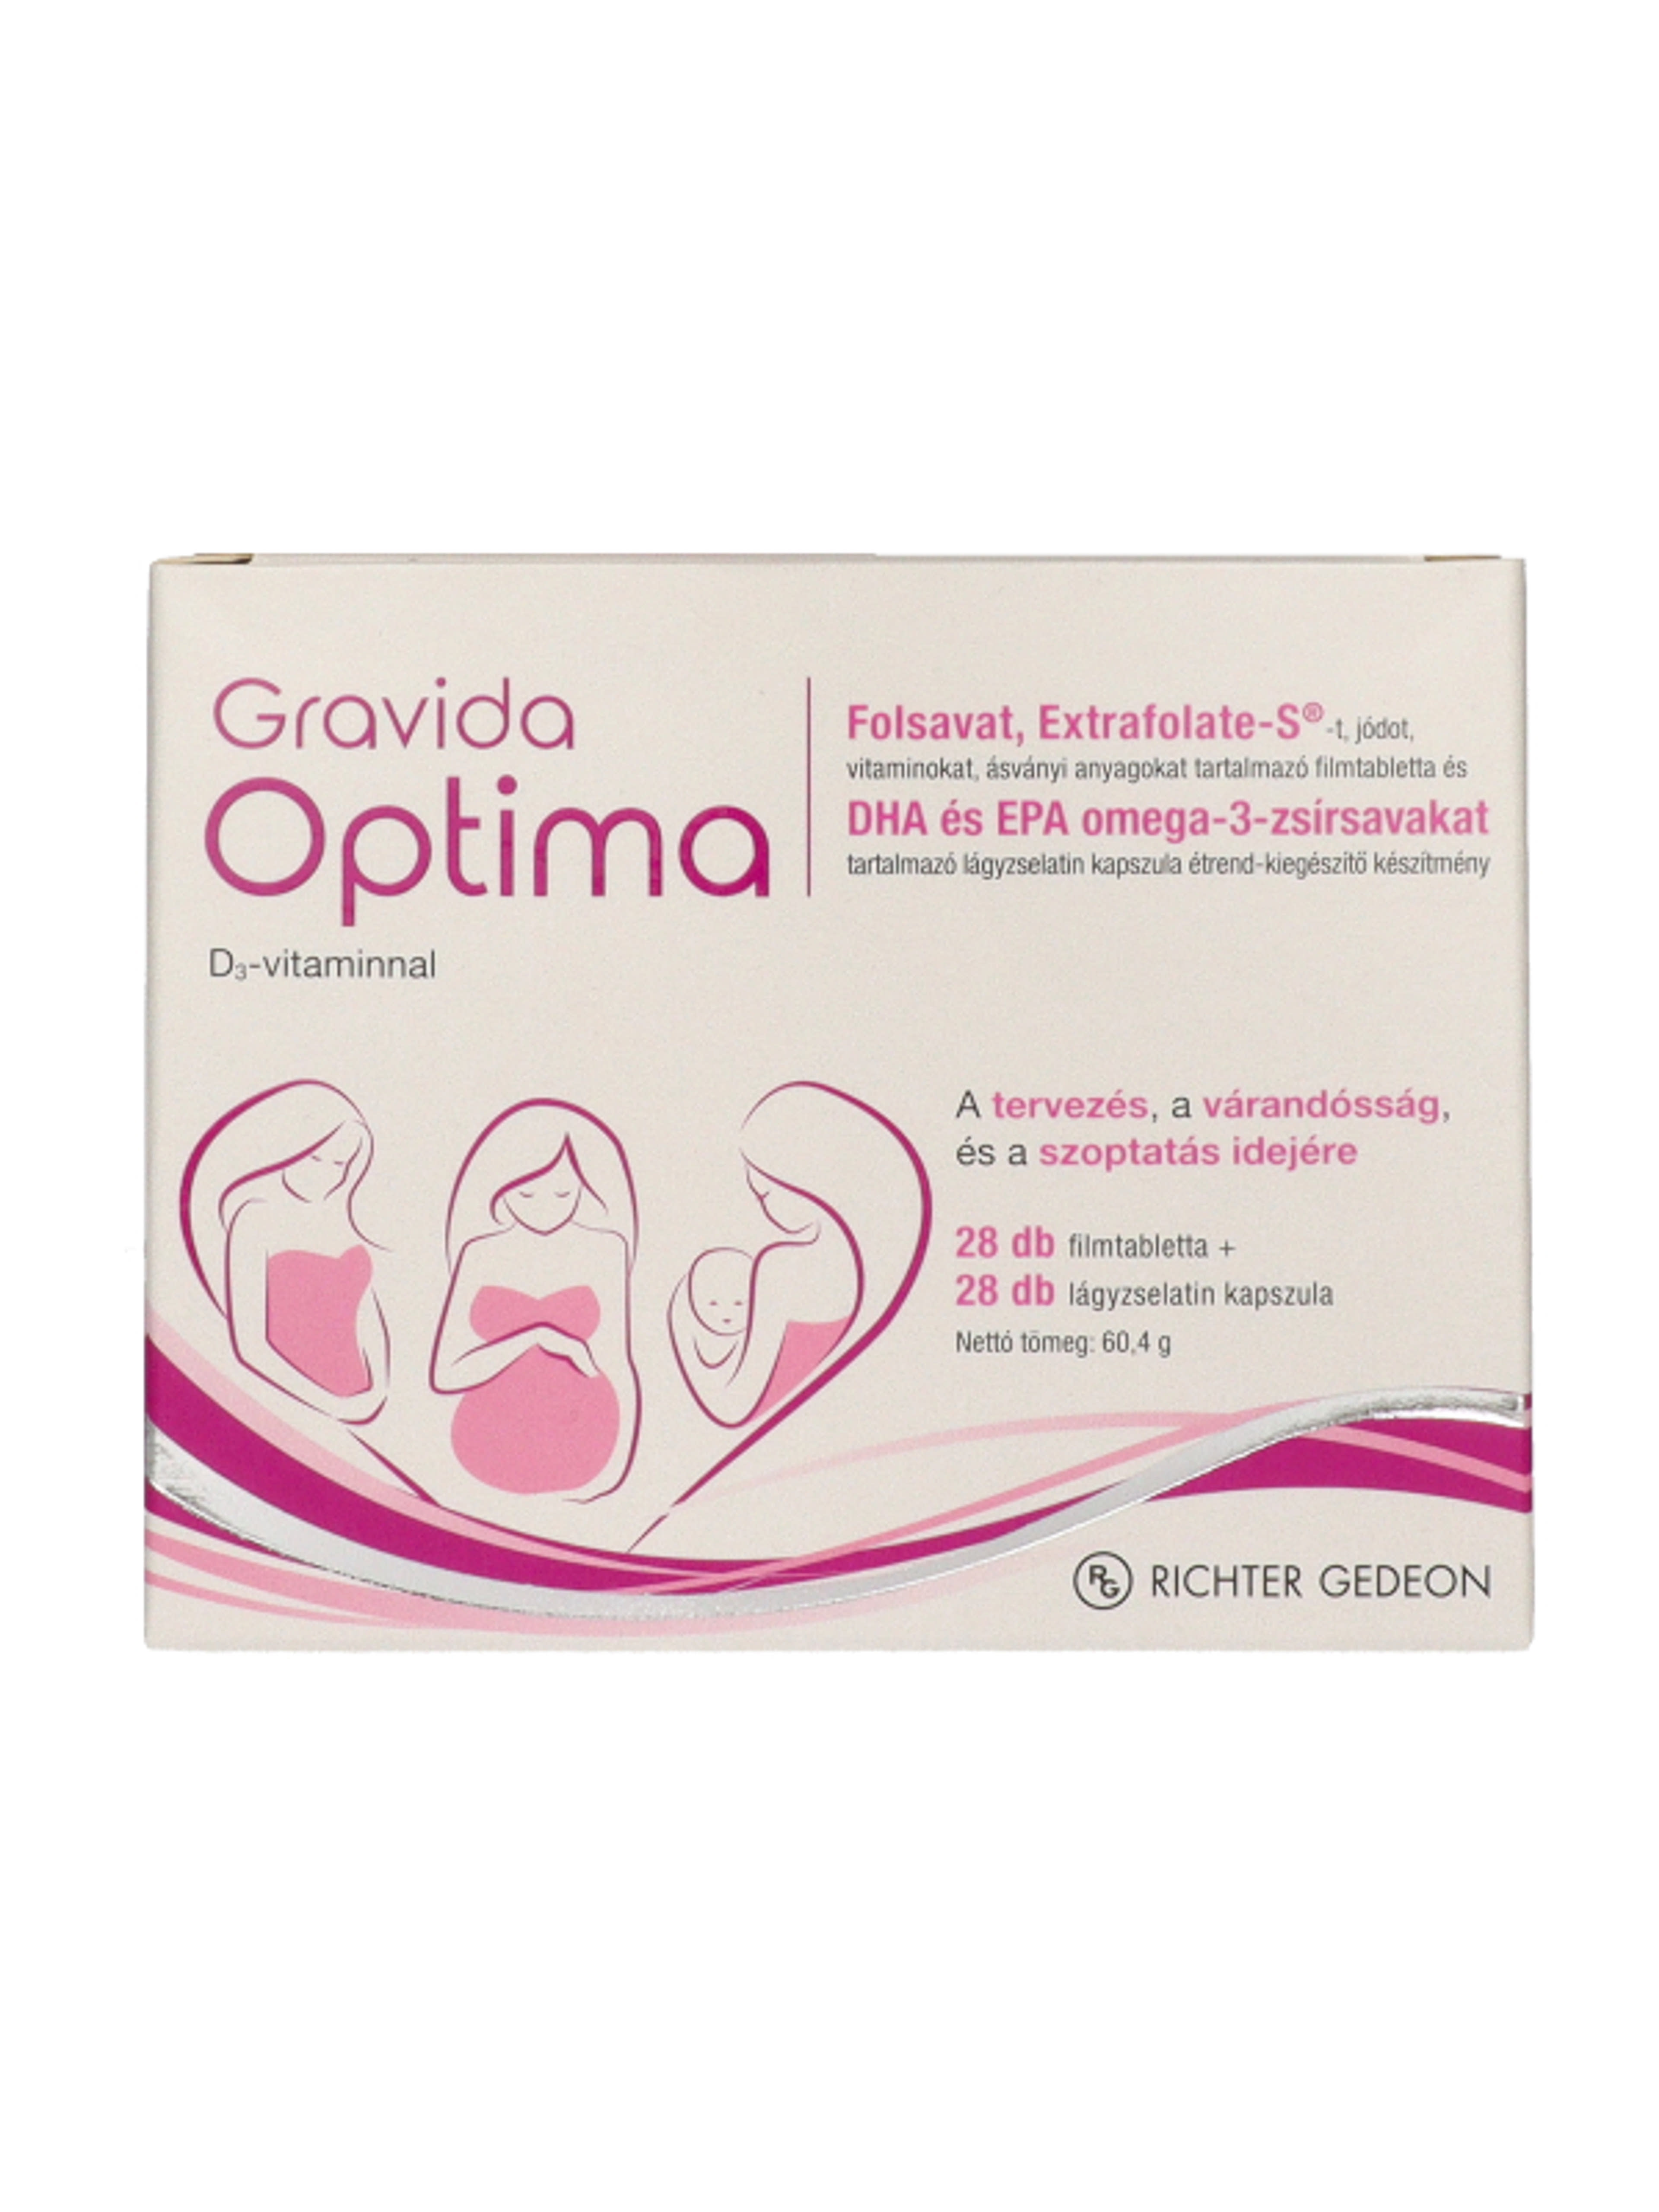 Gravida Optima terhesvitamin 2x28 db - 56 db